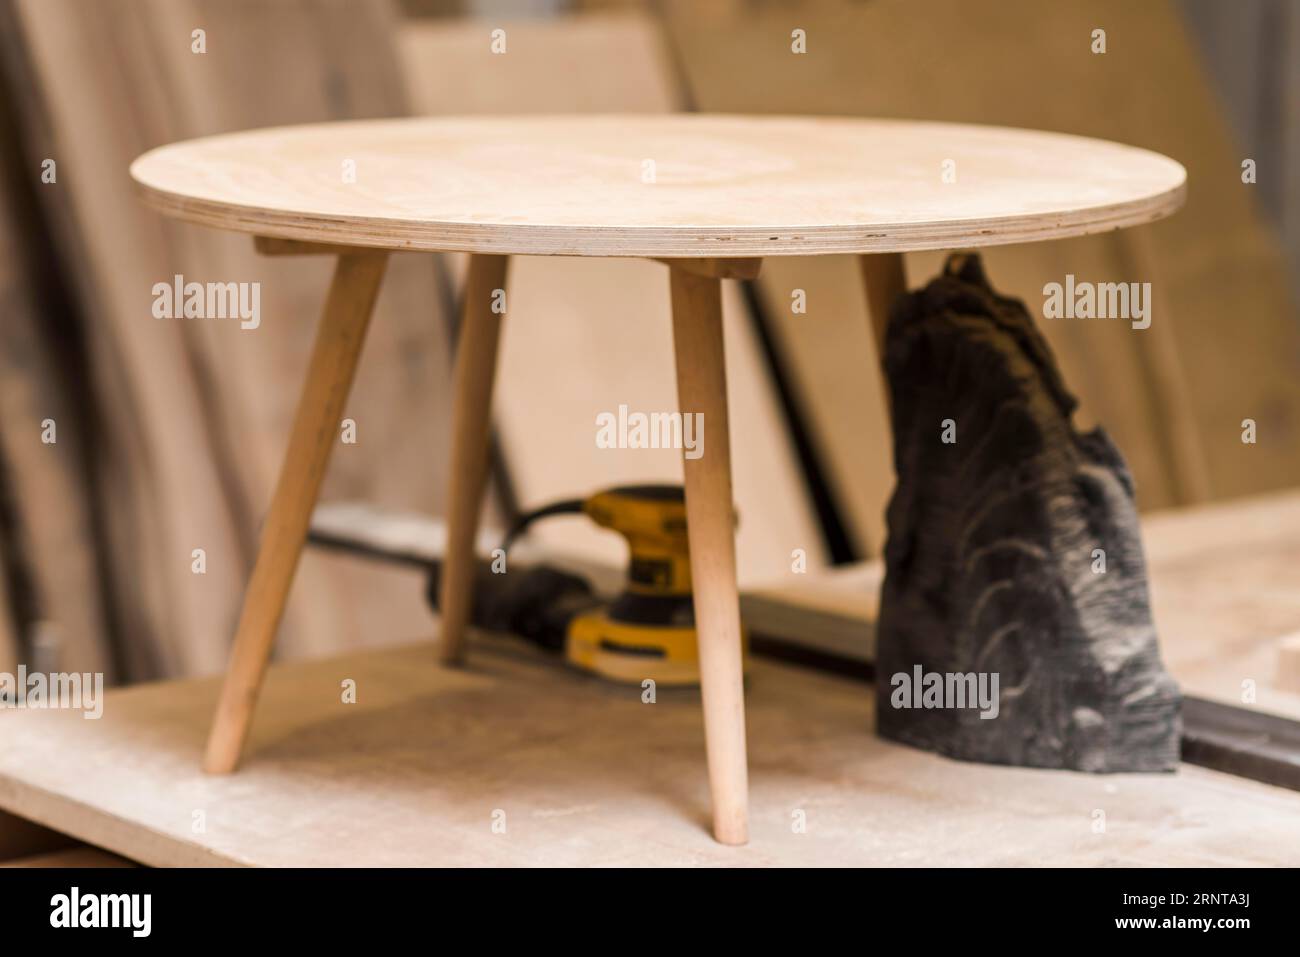 Petit établi de table rond en bois incomplet Banque D'Images